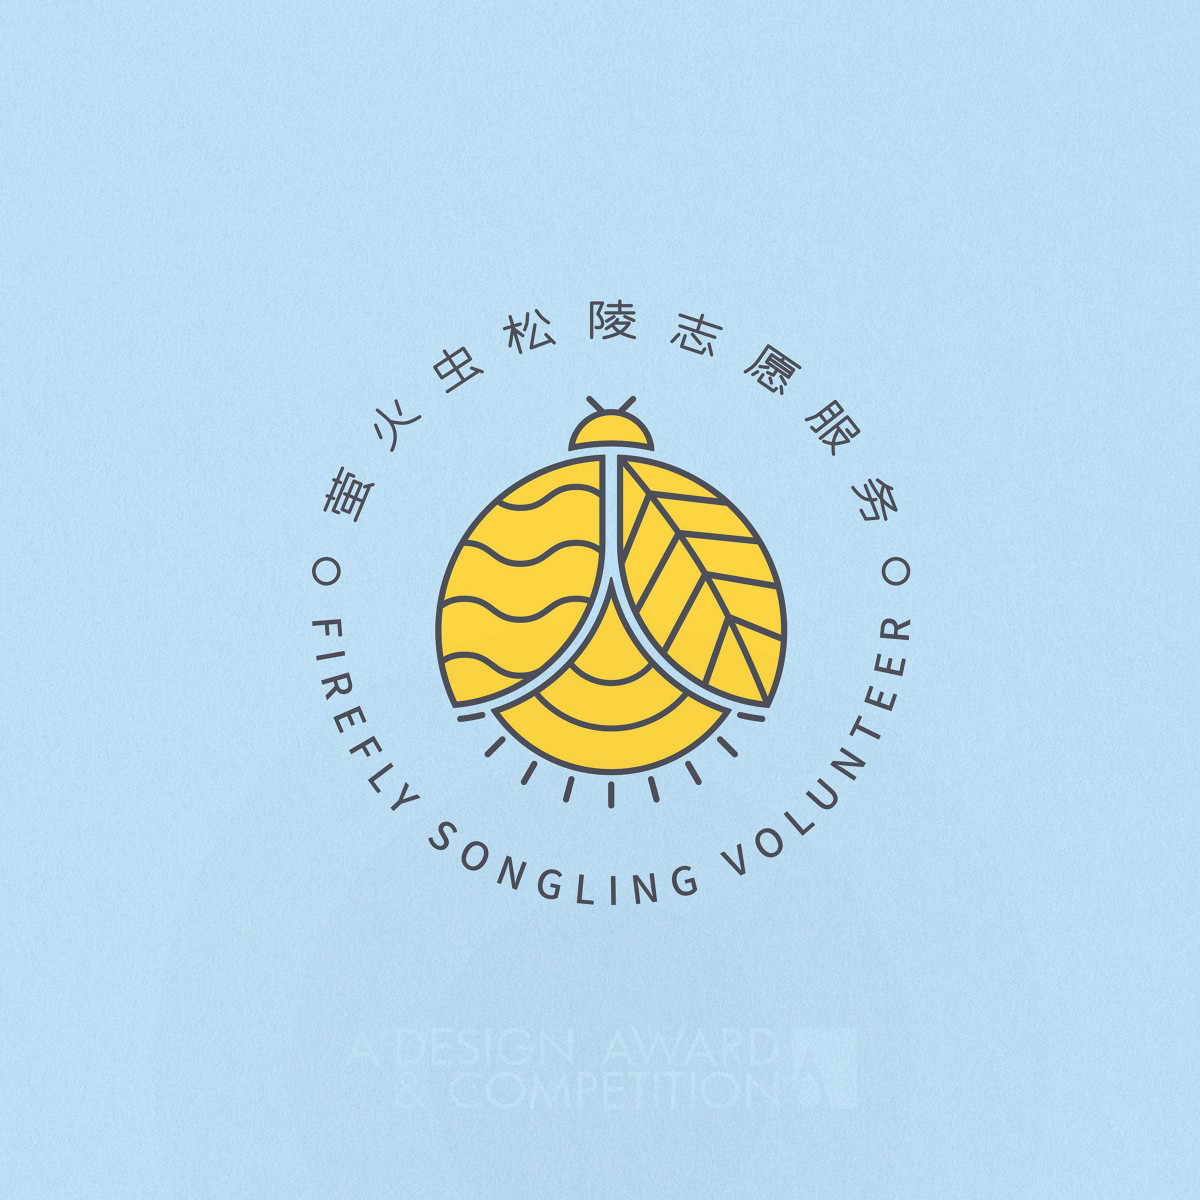 불꽃놀이 송링 봉사단: 현대적인 미학과 봉사정신을 담은 로고 디자인